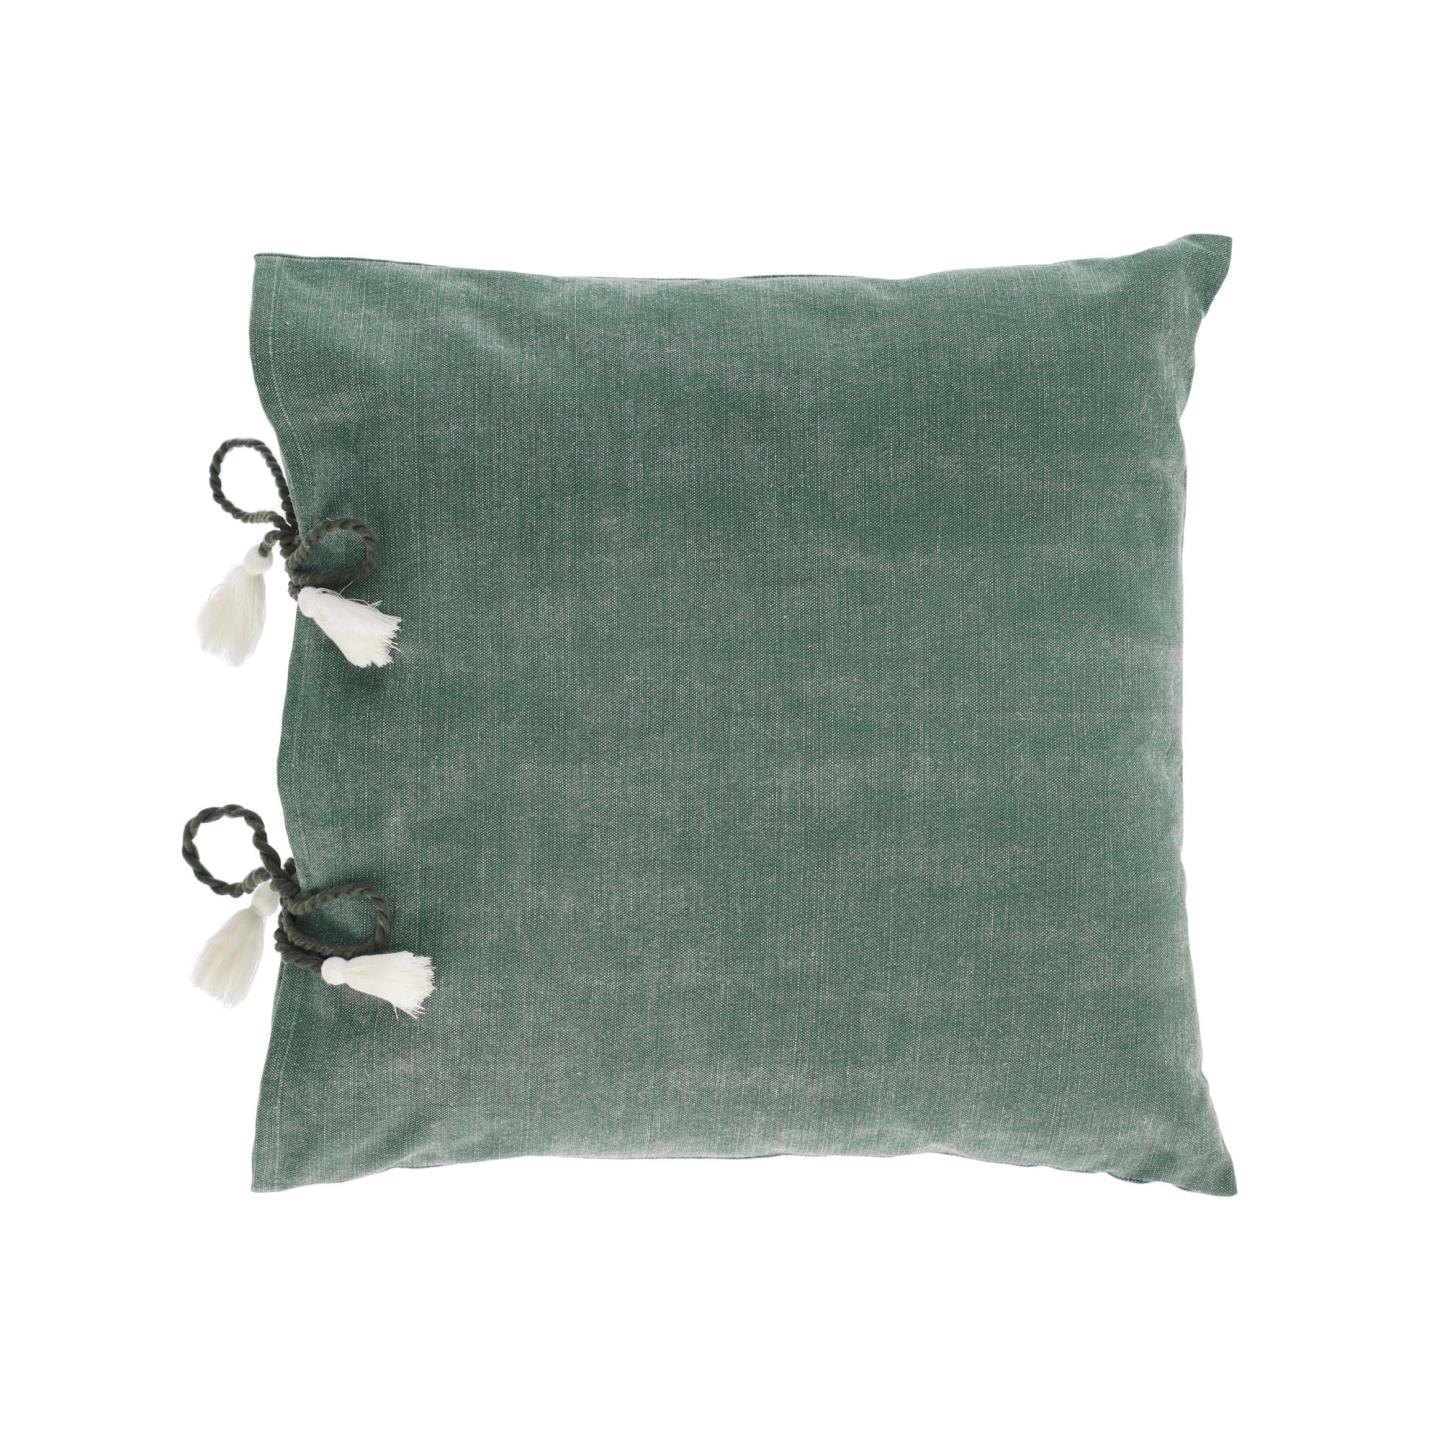 Чехол на подушку Varina из 100% хлопка зеленый 45 x 45 см